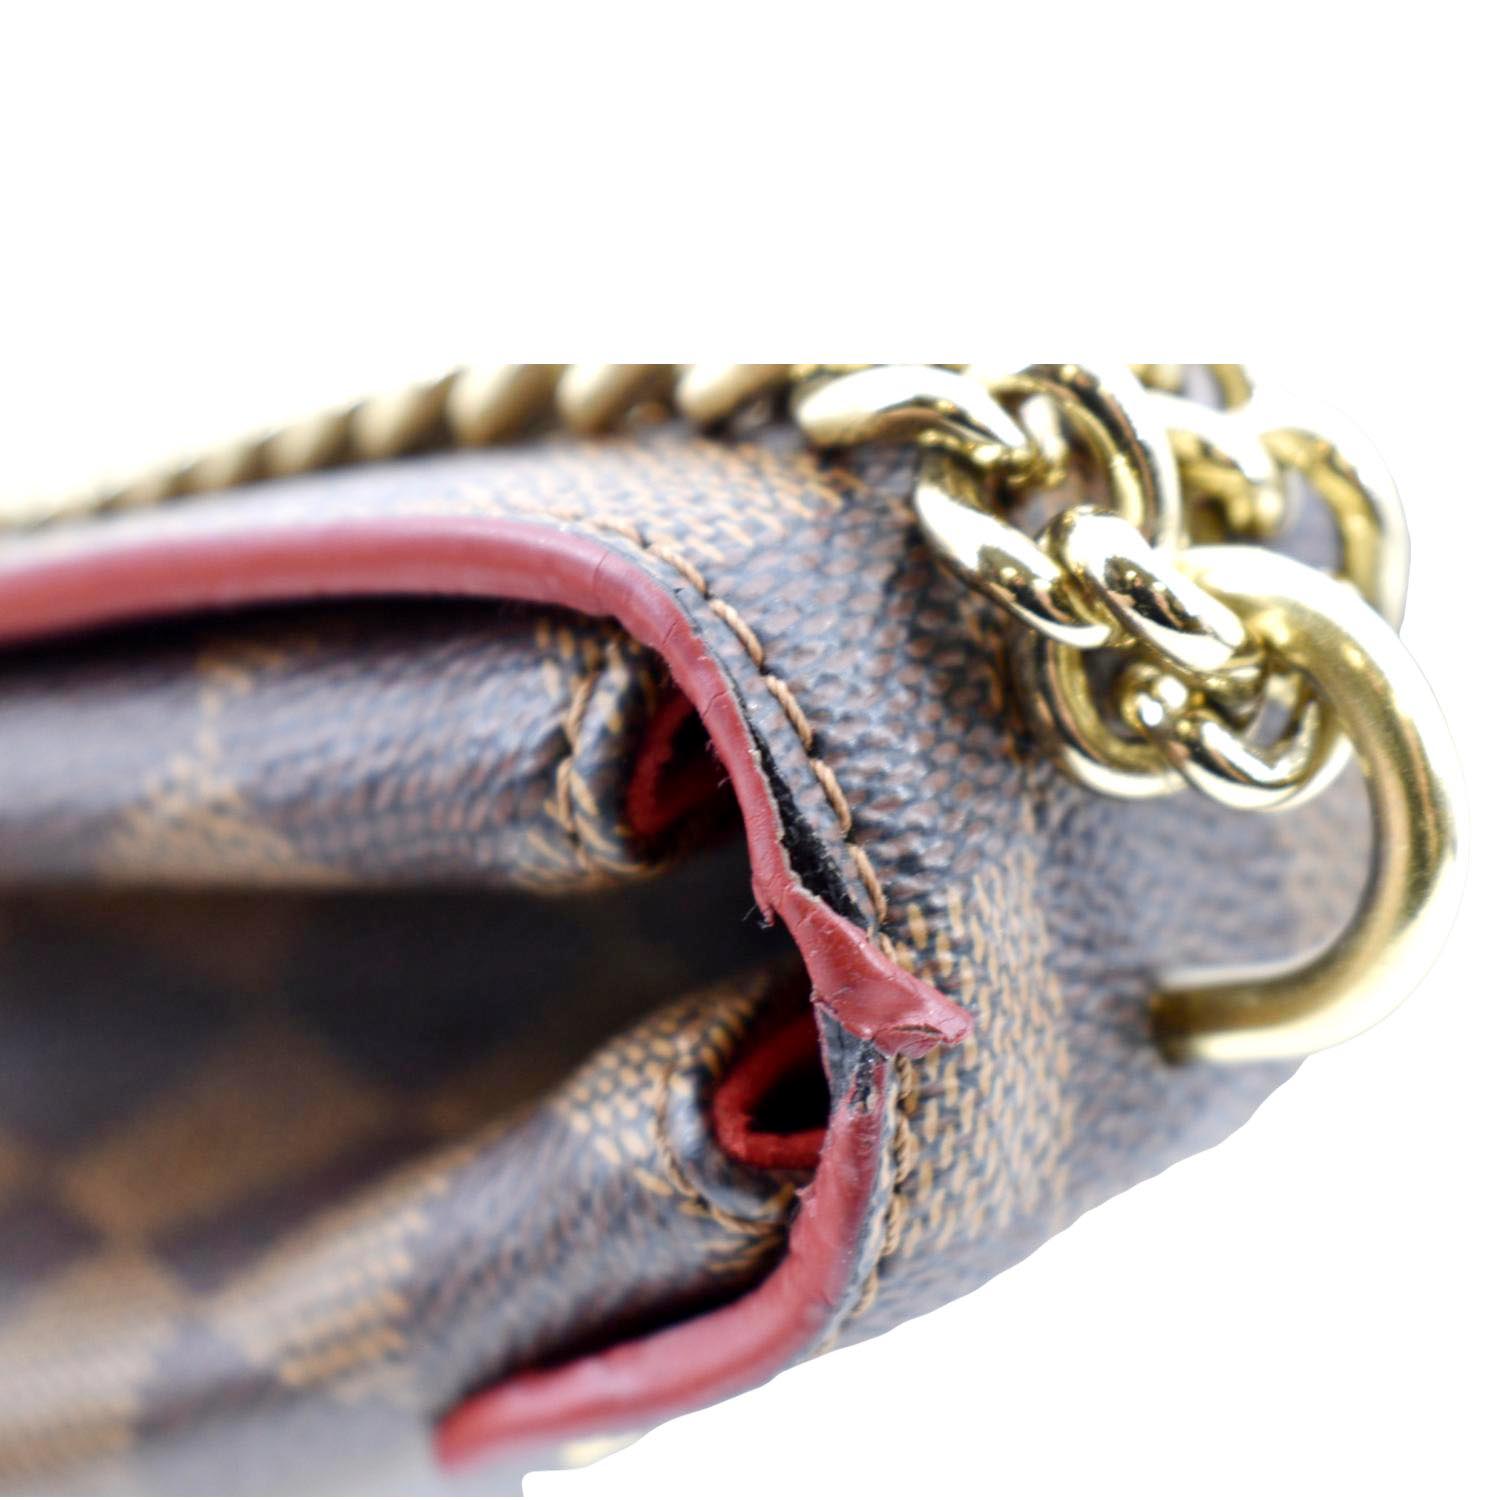 Louis Vuitton Caissa Clutch With Chain, Bragmybag